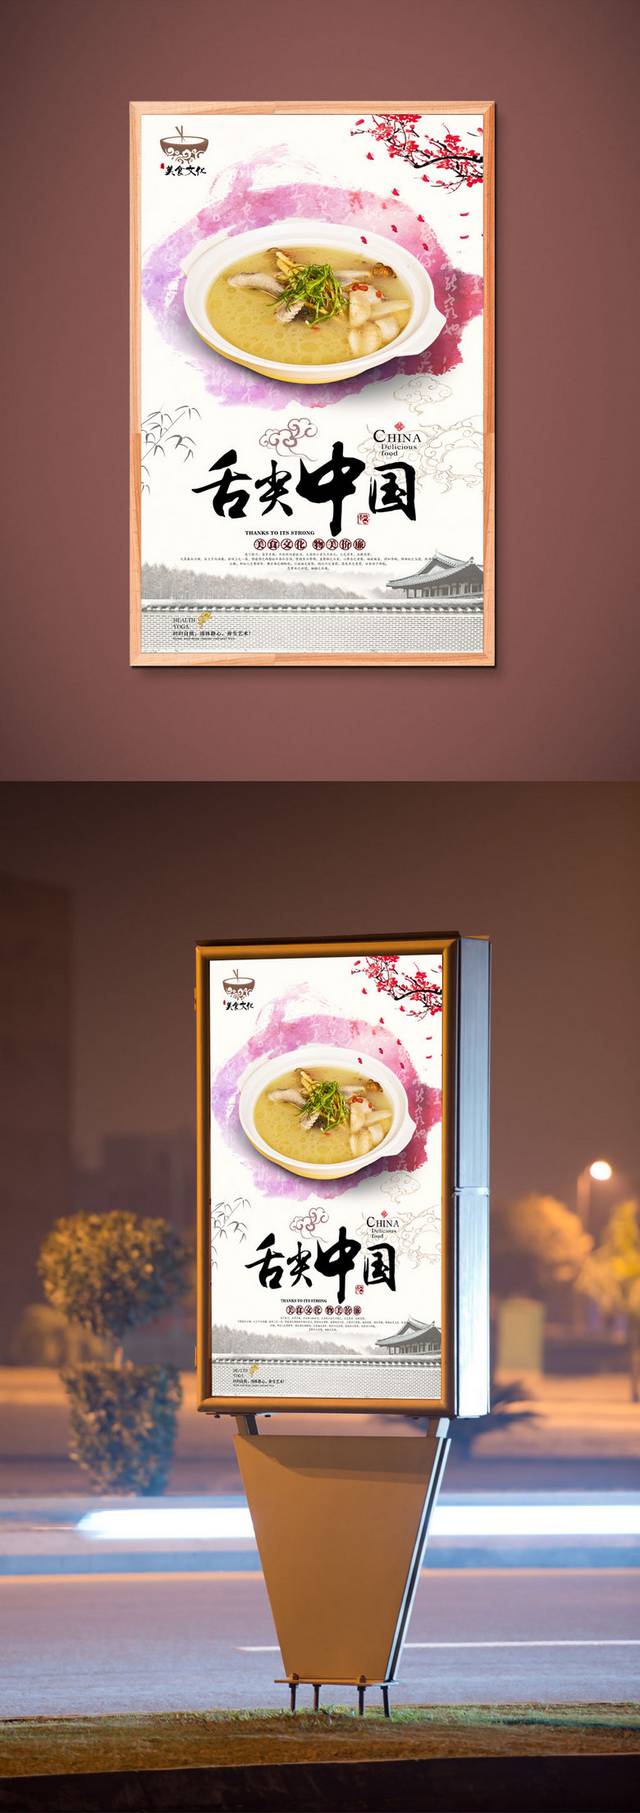 中国风老鸭汤宣传海报设计